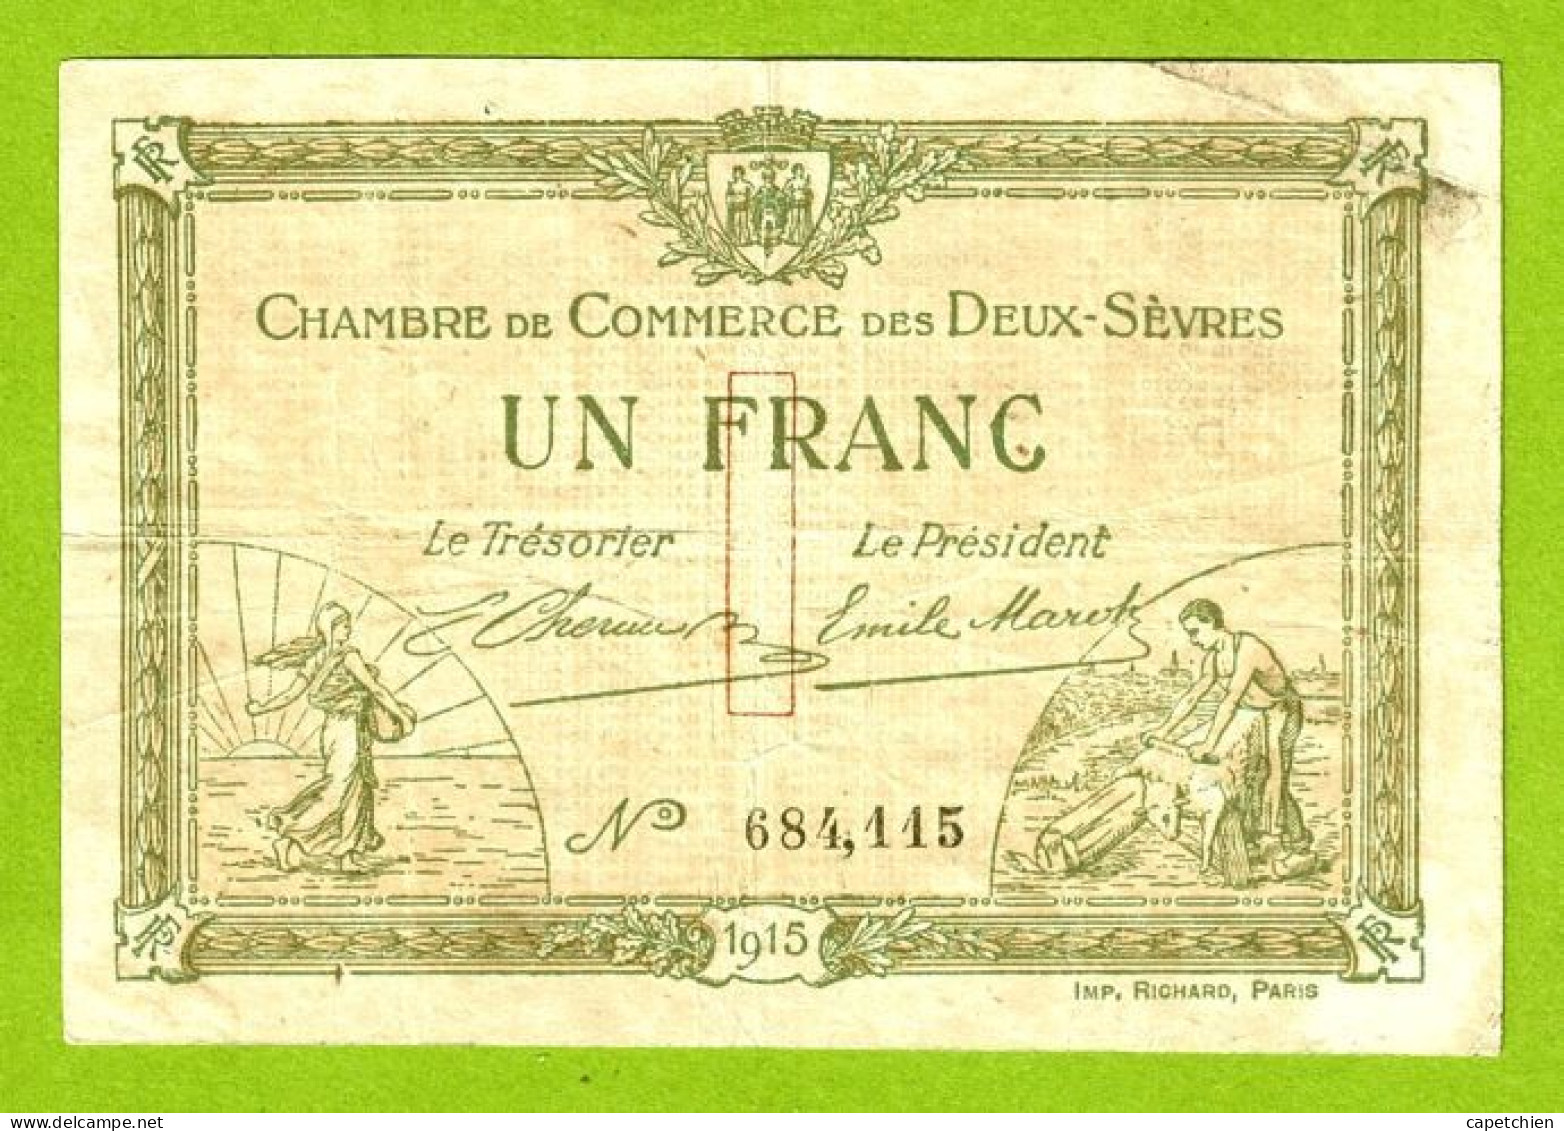 FRANCE/ CHAMBRE DE COMMERCE Des DEUX SÈVRES / 1 FRANC / 30 SEPTEMBRE 1915 / 684,115 - Chambre De Commerce